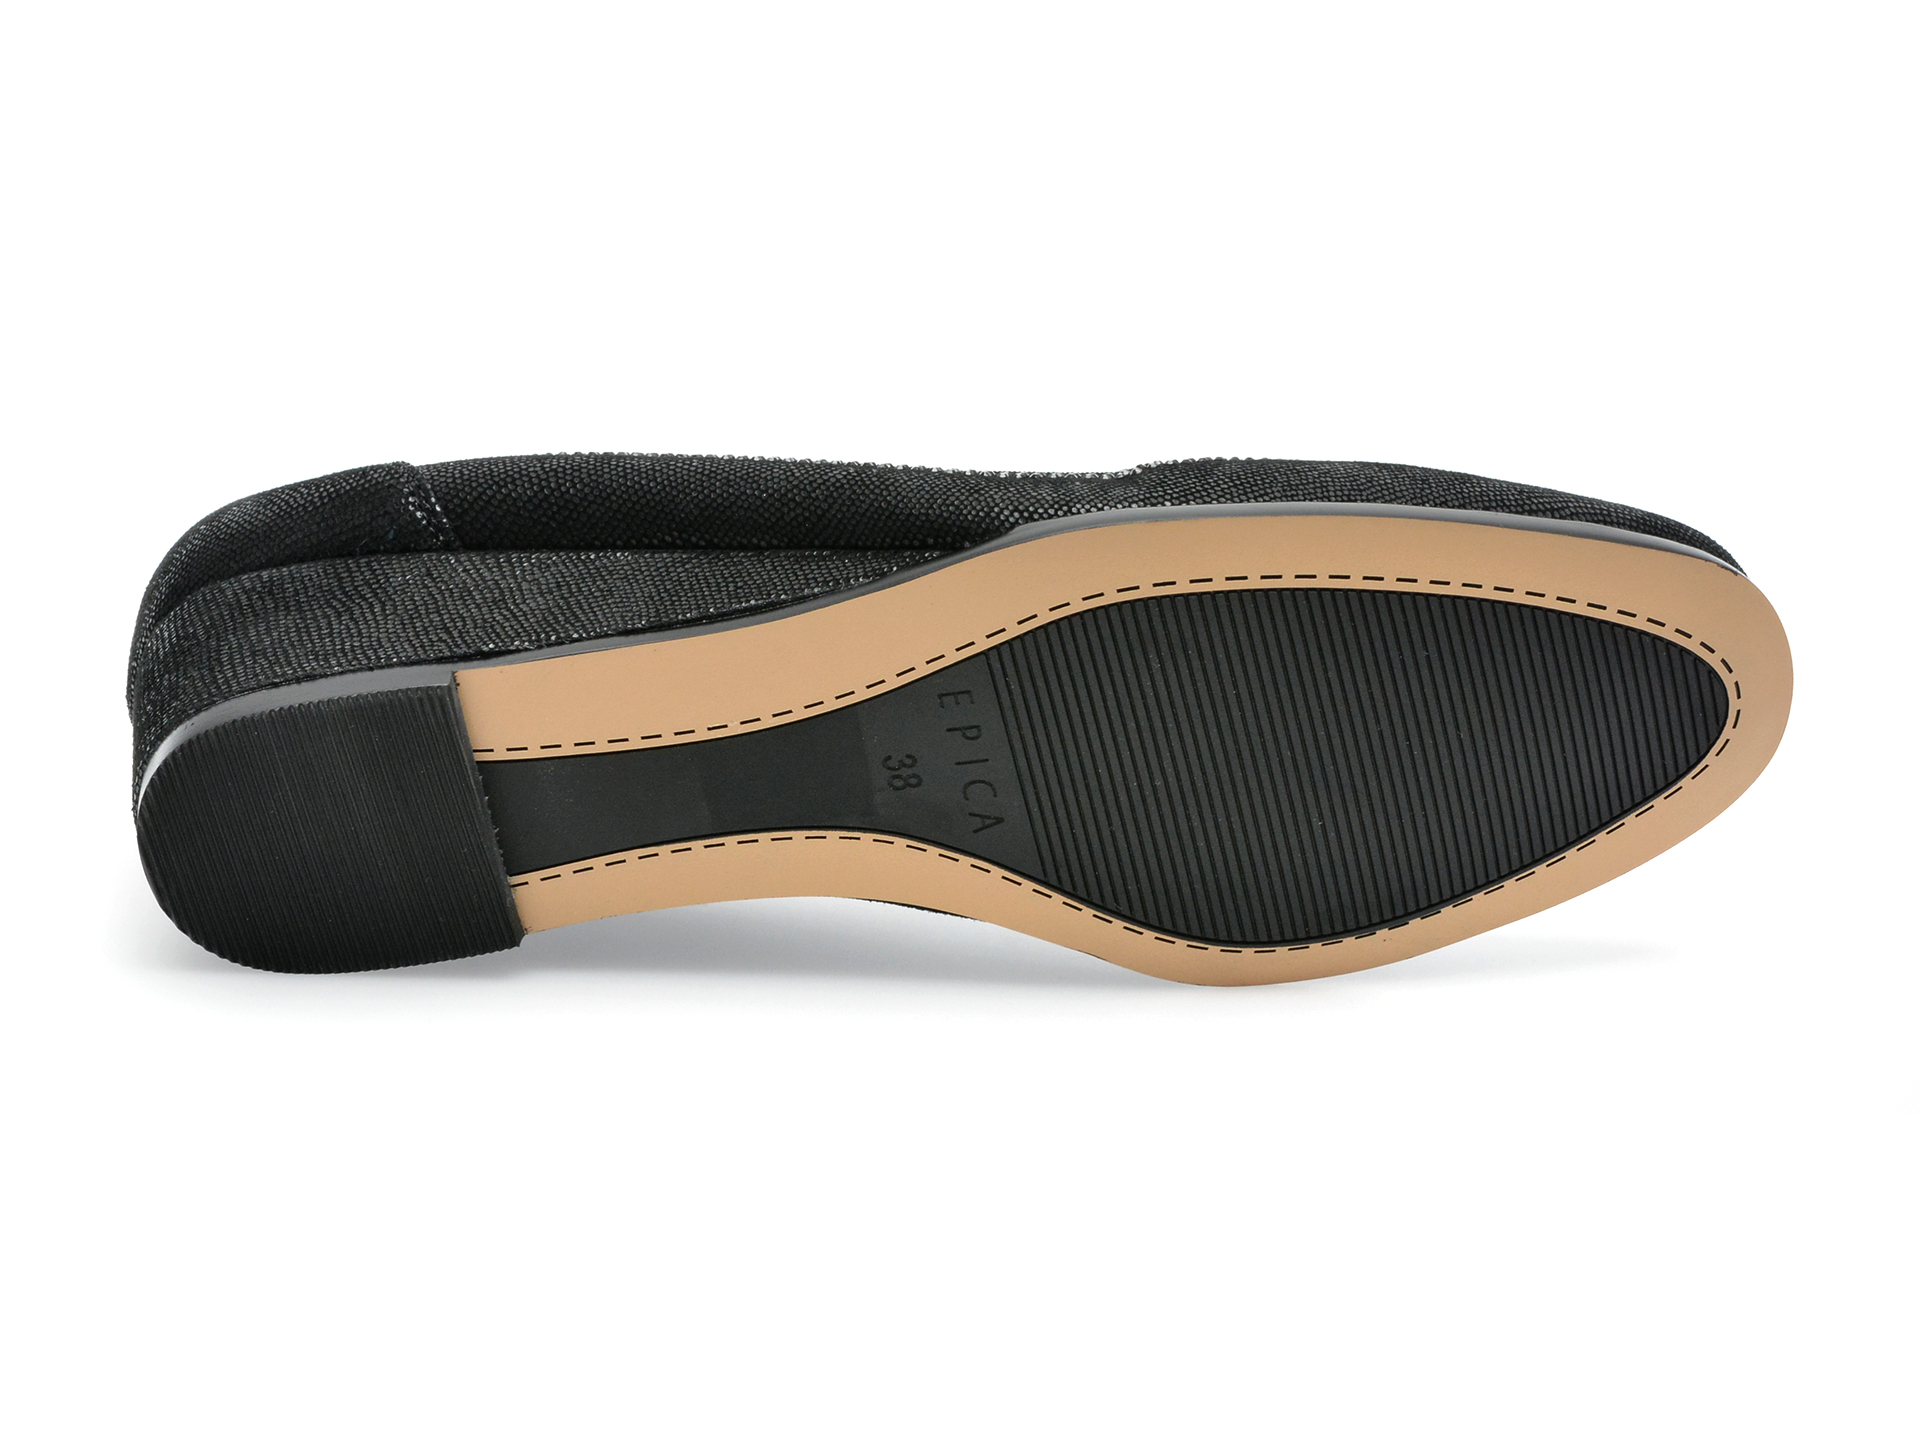 Pantofi EPICA negri, JY20012, din piele naturala